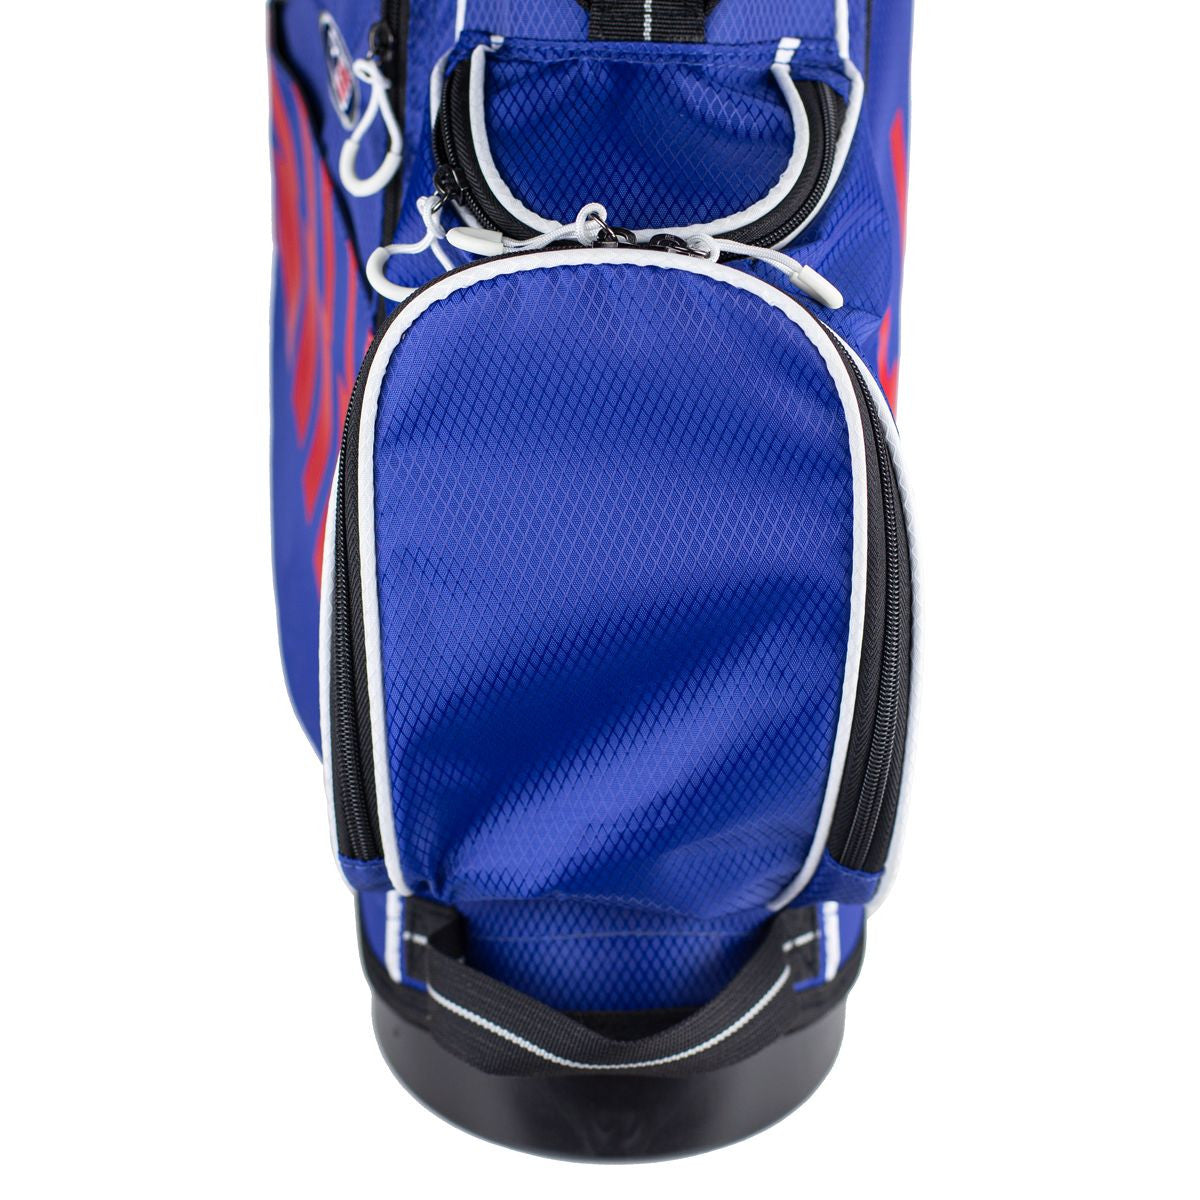 [주니어 골프채]유에스키즈 UL51-s(130cm) 7 Club DV3 Stand Set, Blue/Red/White Bag (블루/레드/화이트 백)